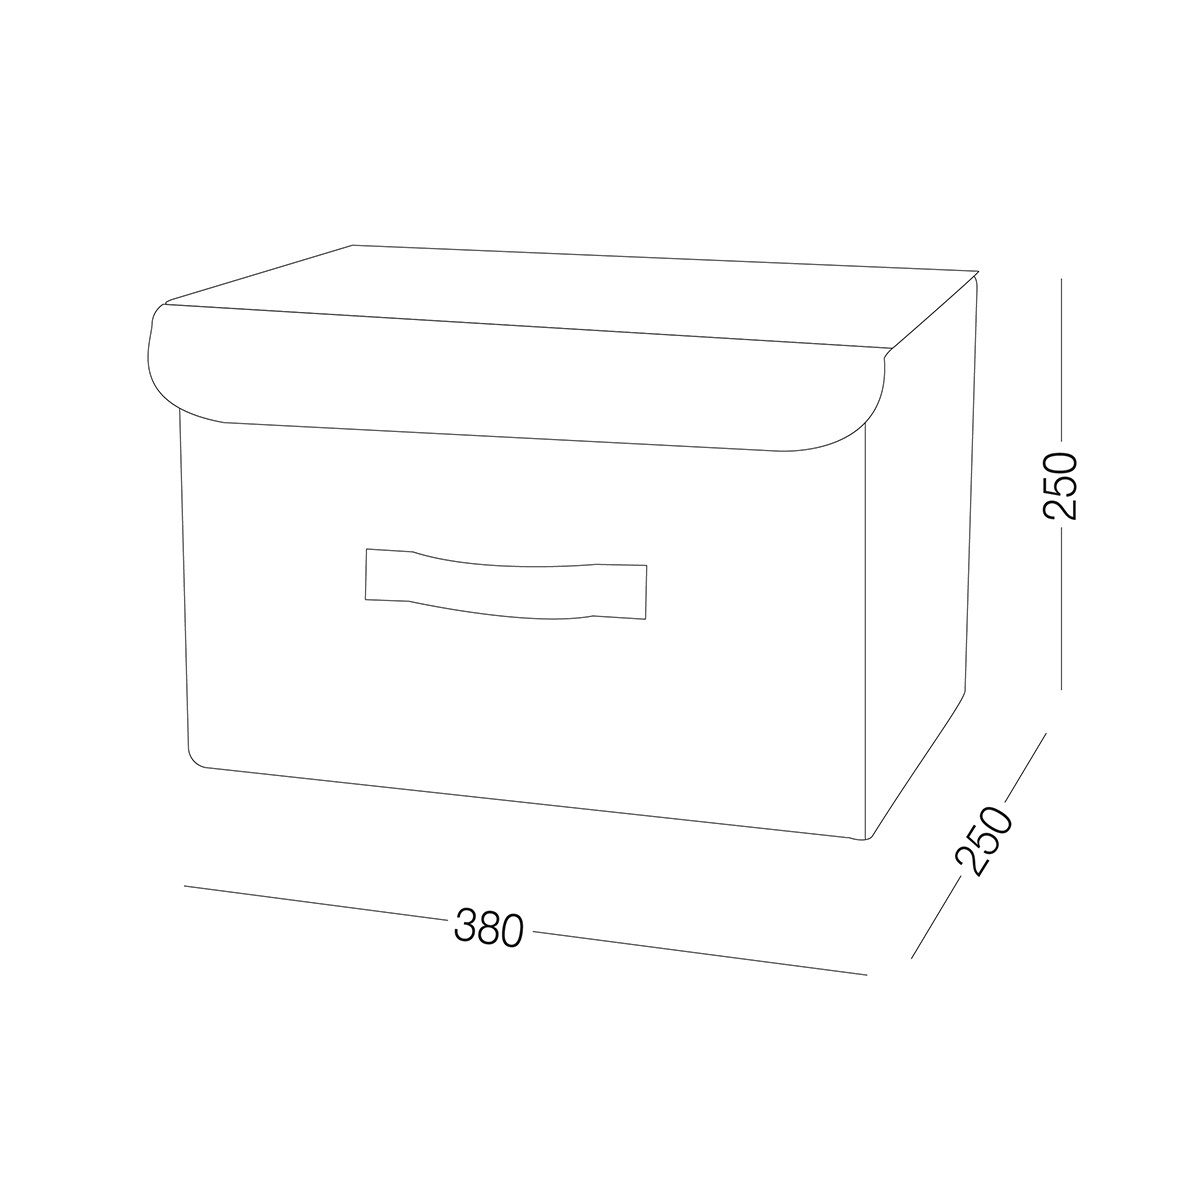 Ящик для хранения с крышкой MVM тканевый серый 250x250x380 TH-07 M GRAY